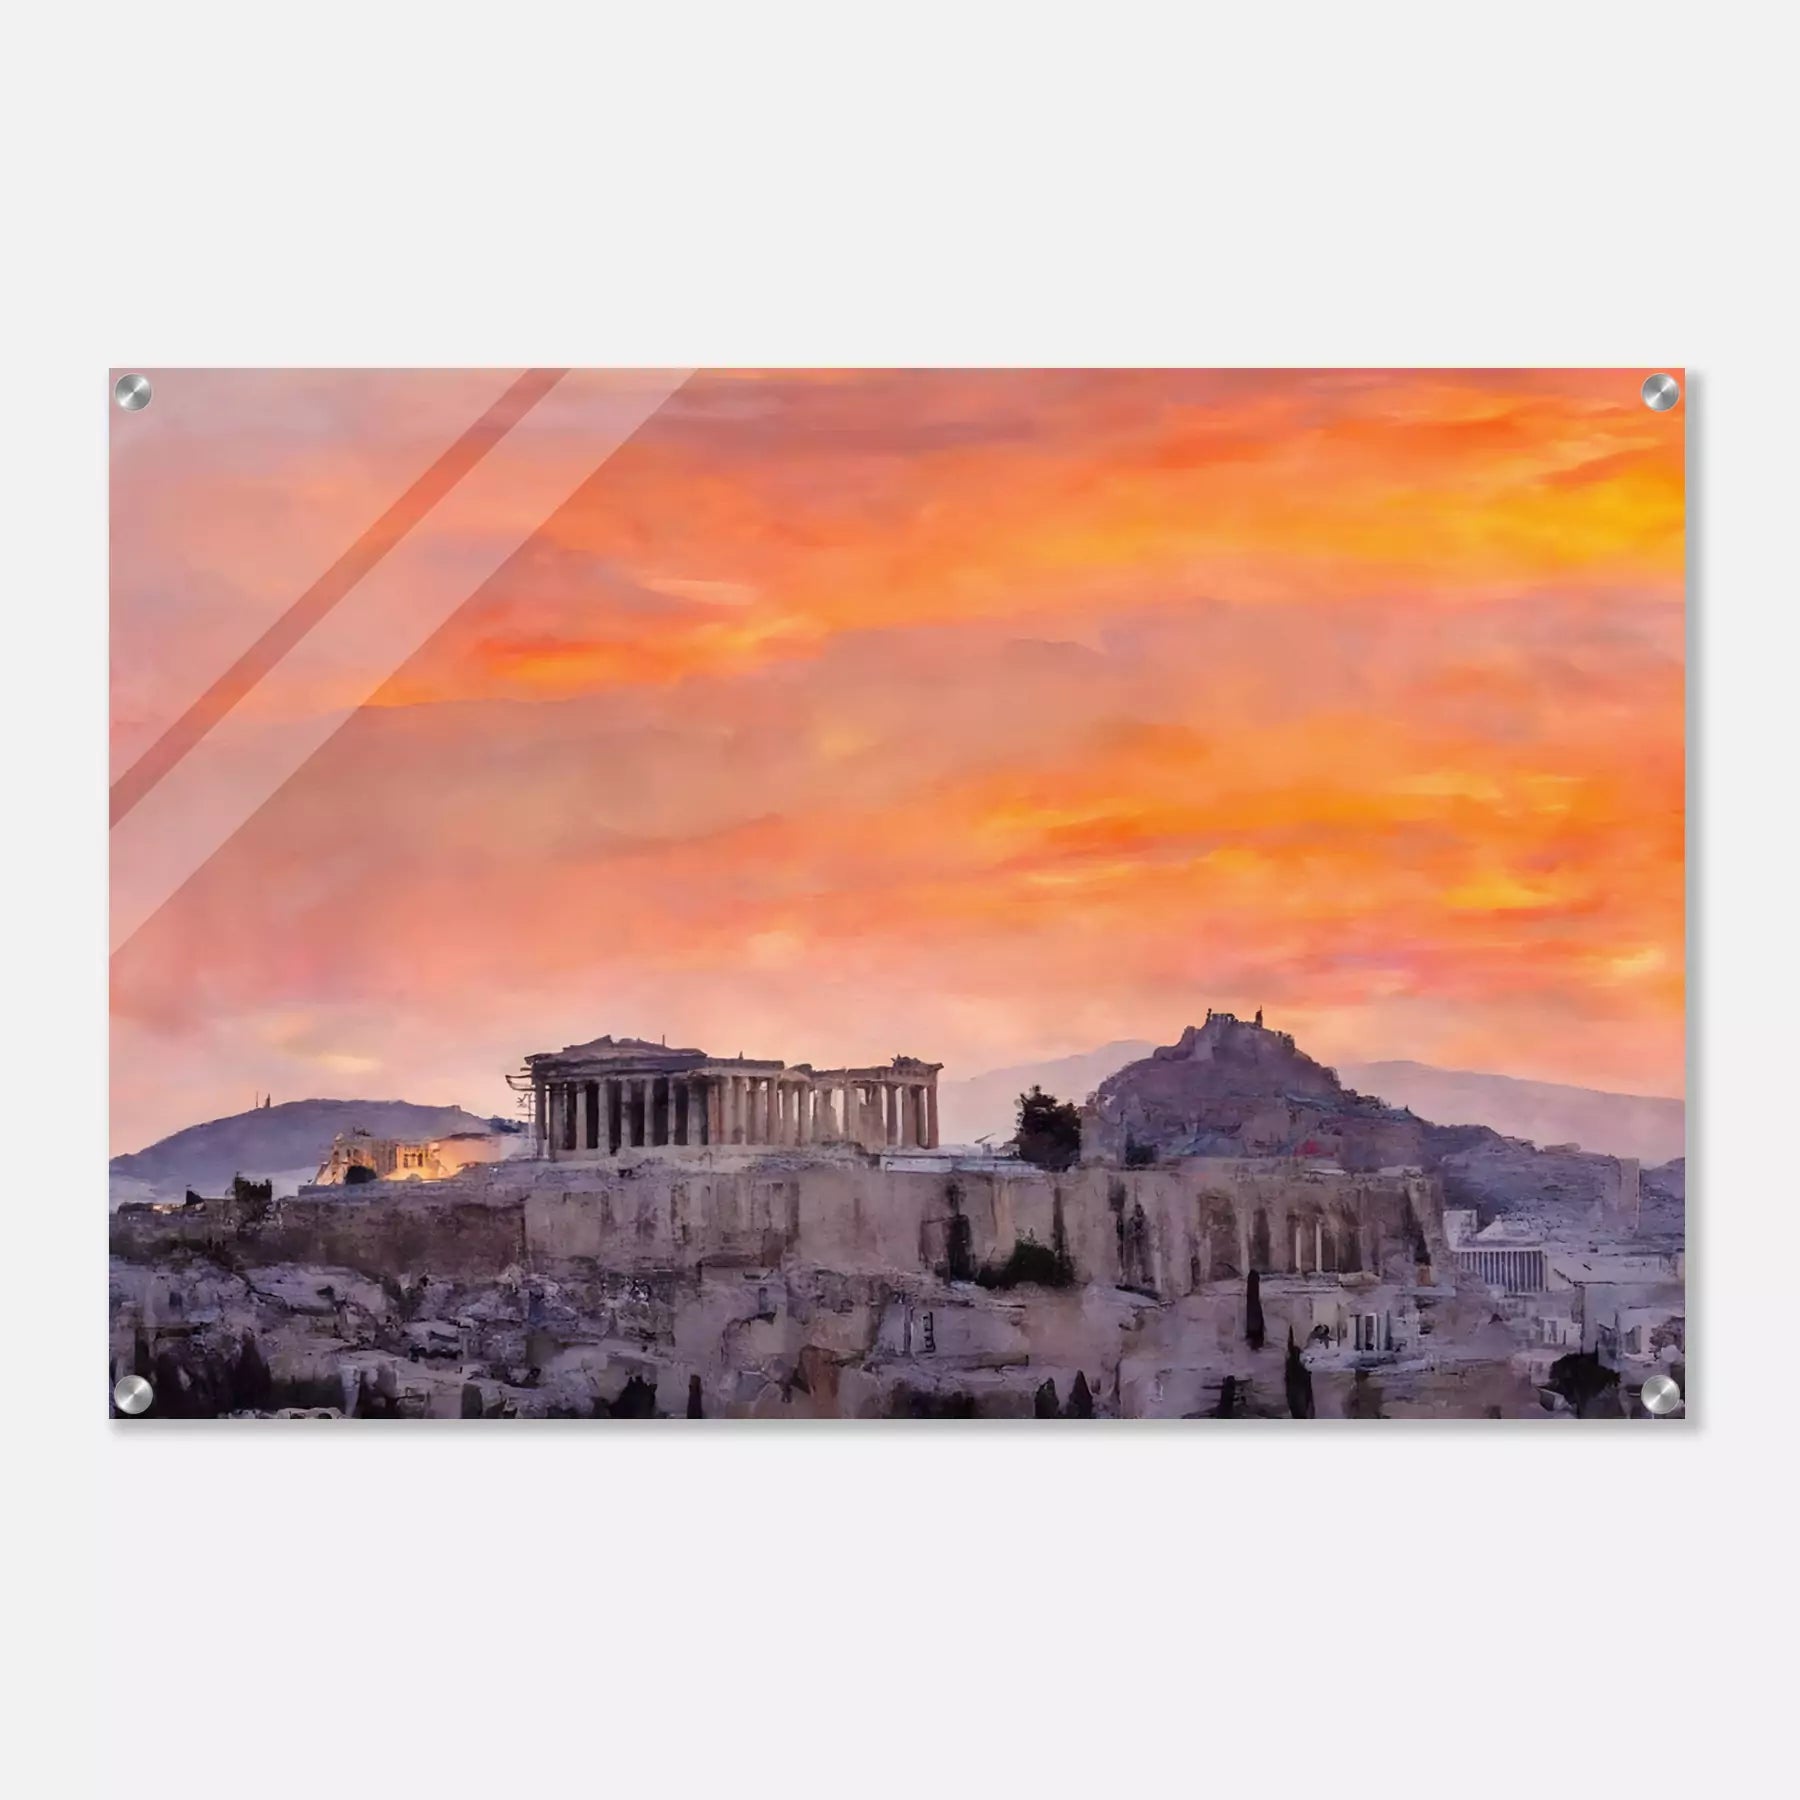 Acropolis of Athens - Greece